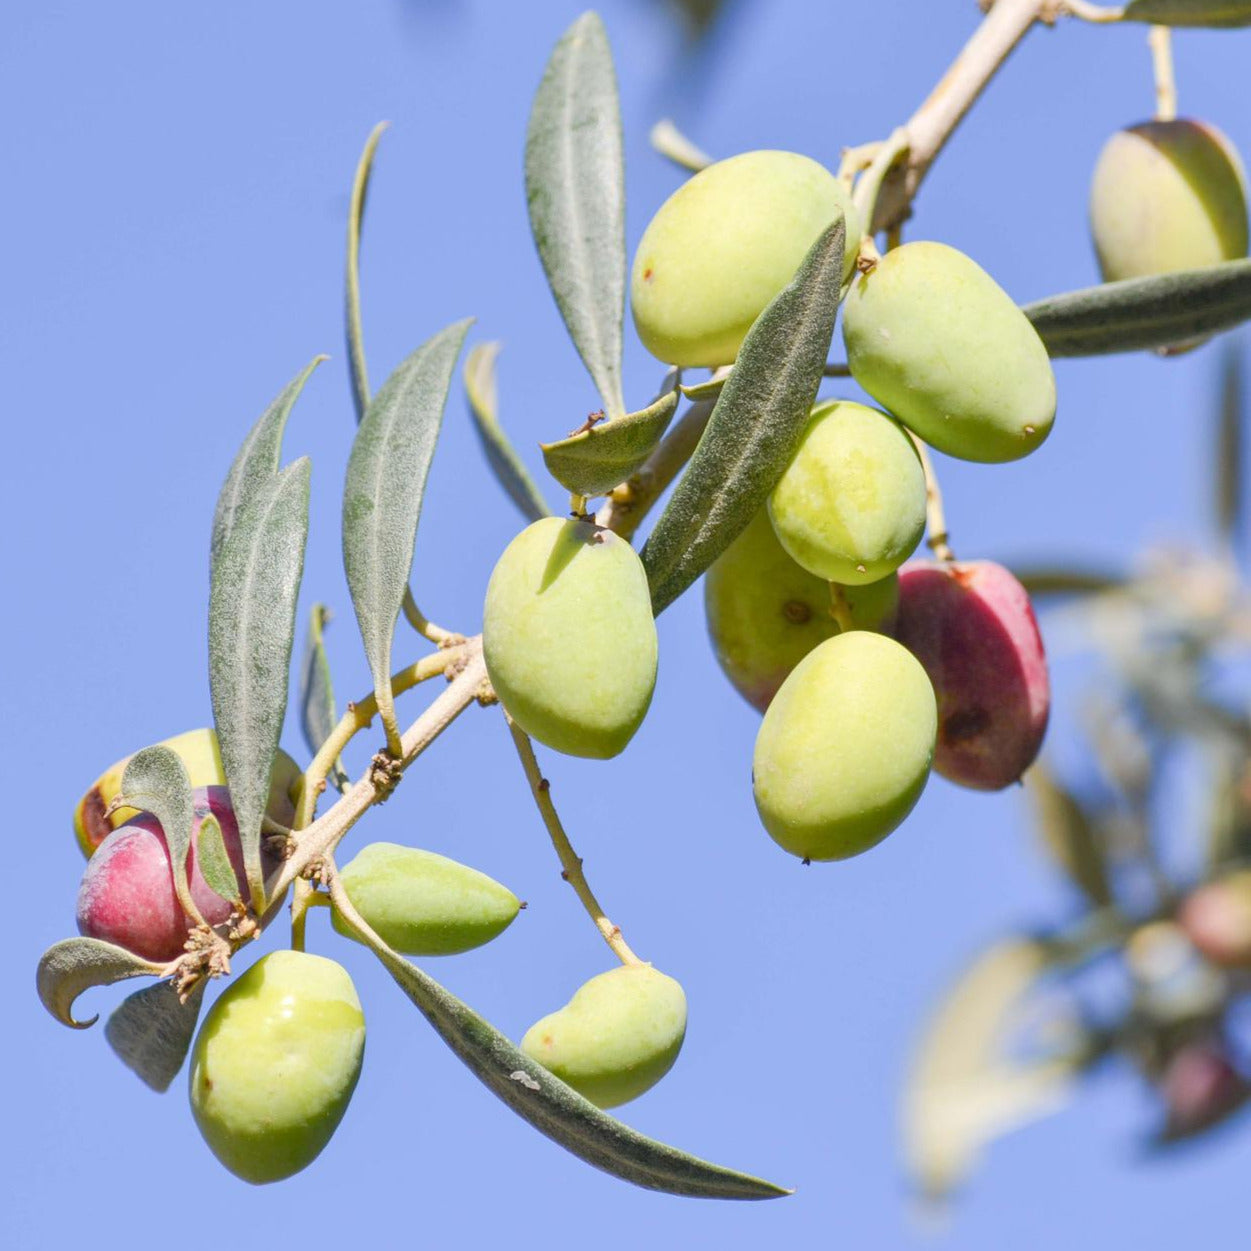 Olivenbaum Knospenextrakt Themen: Arterienverkalkung von Gehirn, Herzkranzgefäßen, Blutgefäßen der Extremitäten, Bluthochdruck, zu hohes Cholesterin